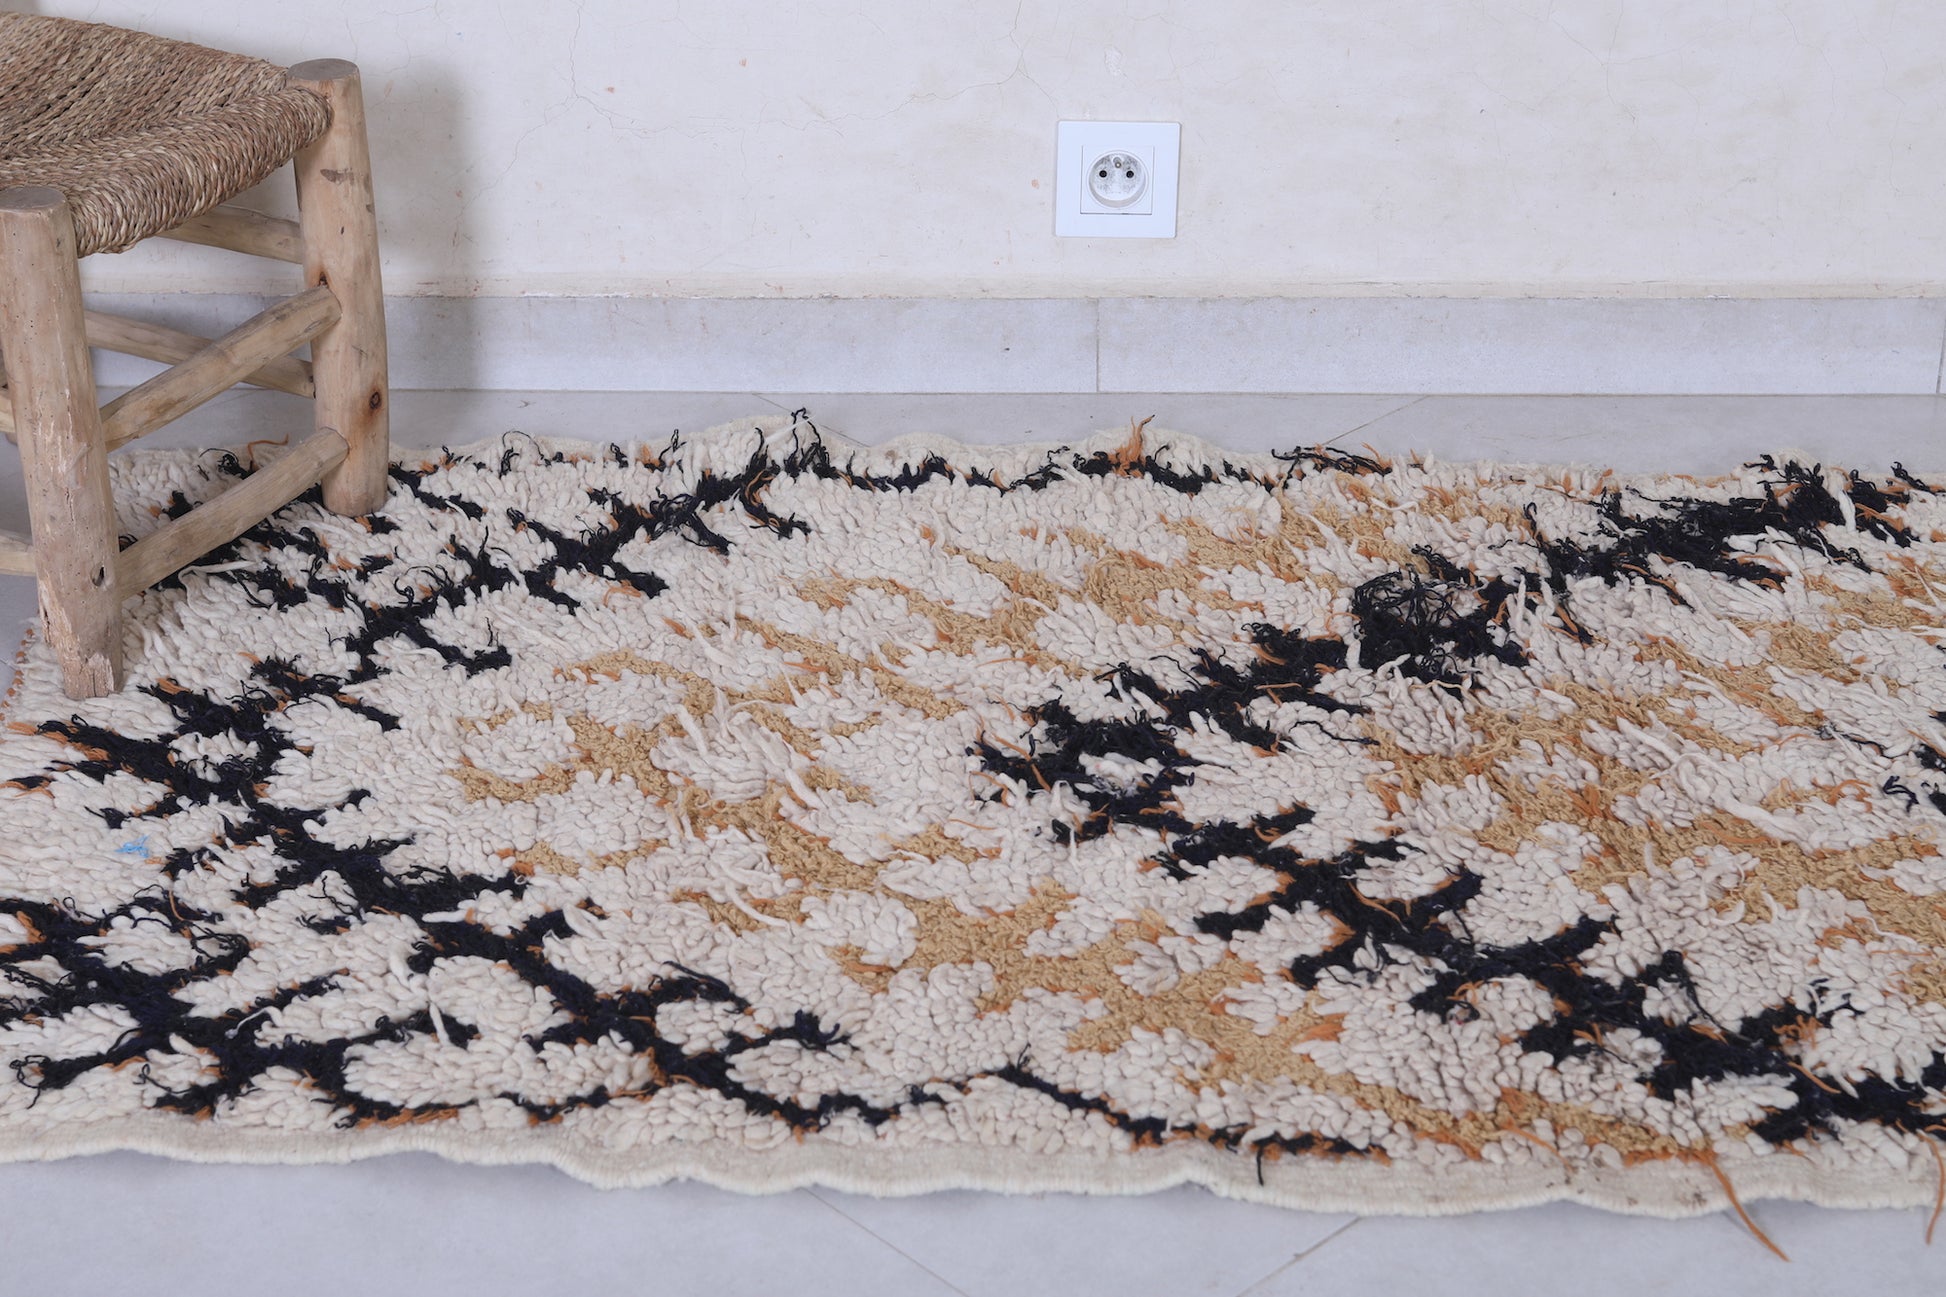 Moroccan rug 2.7 X 6 Feet